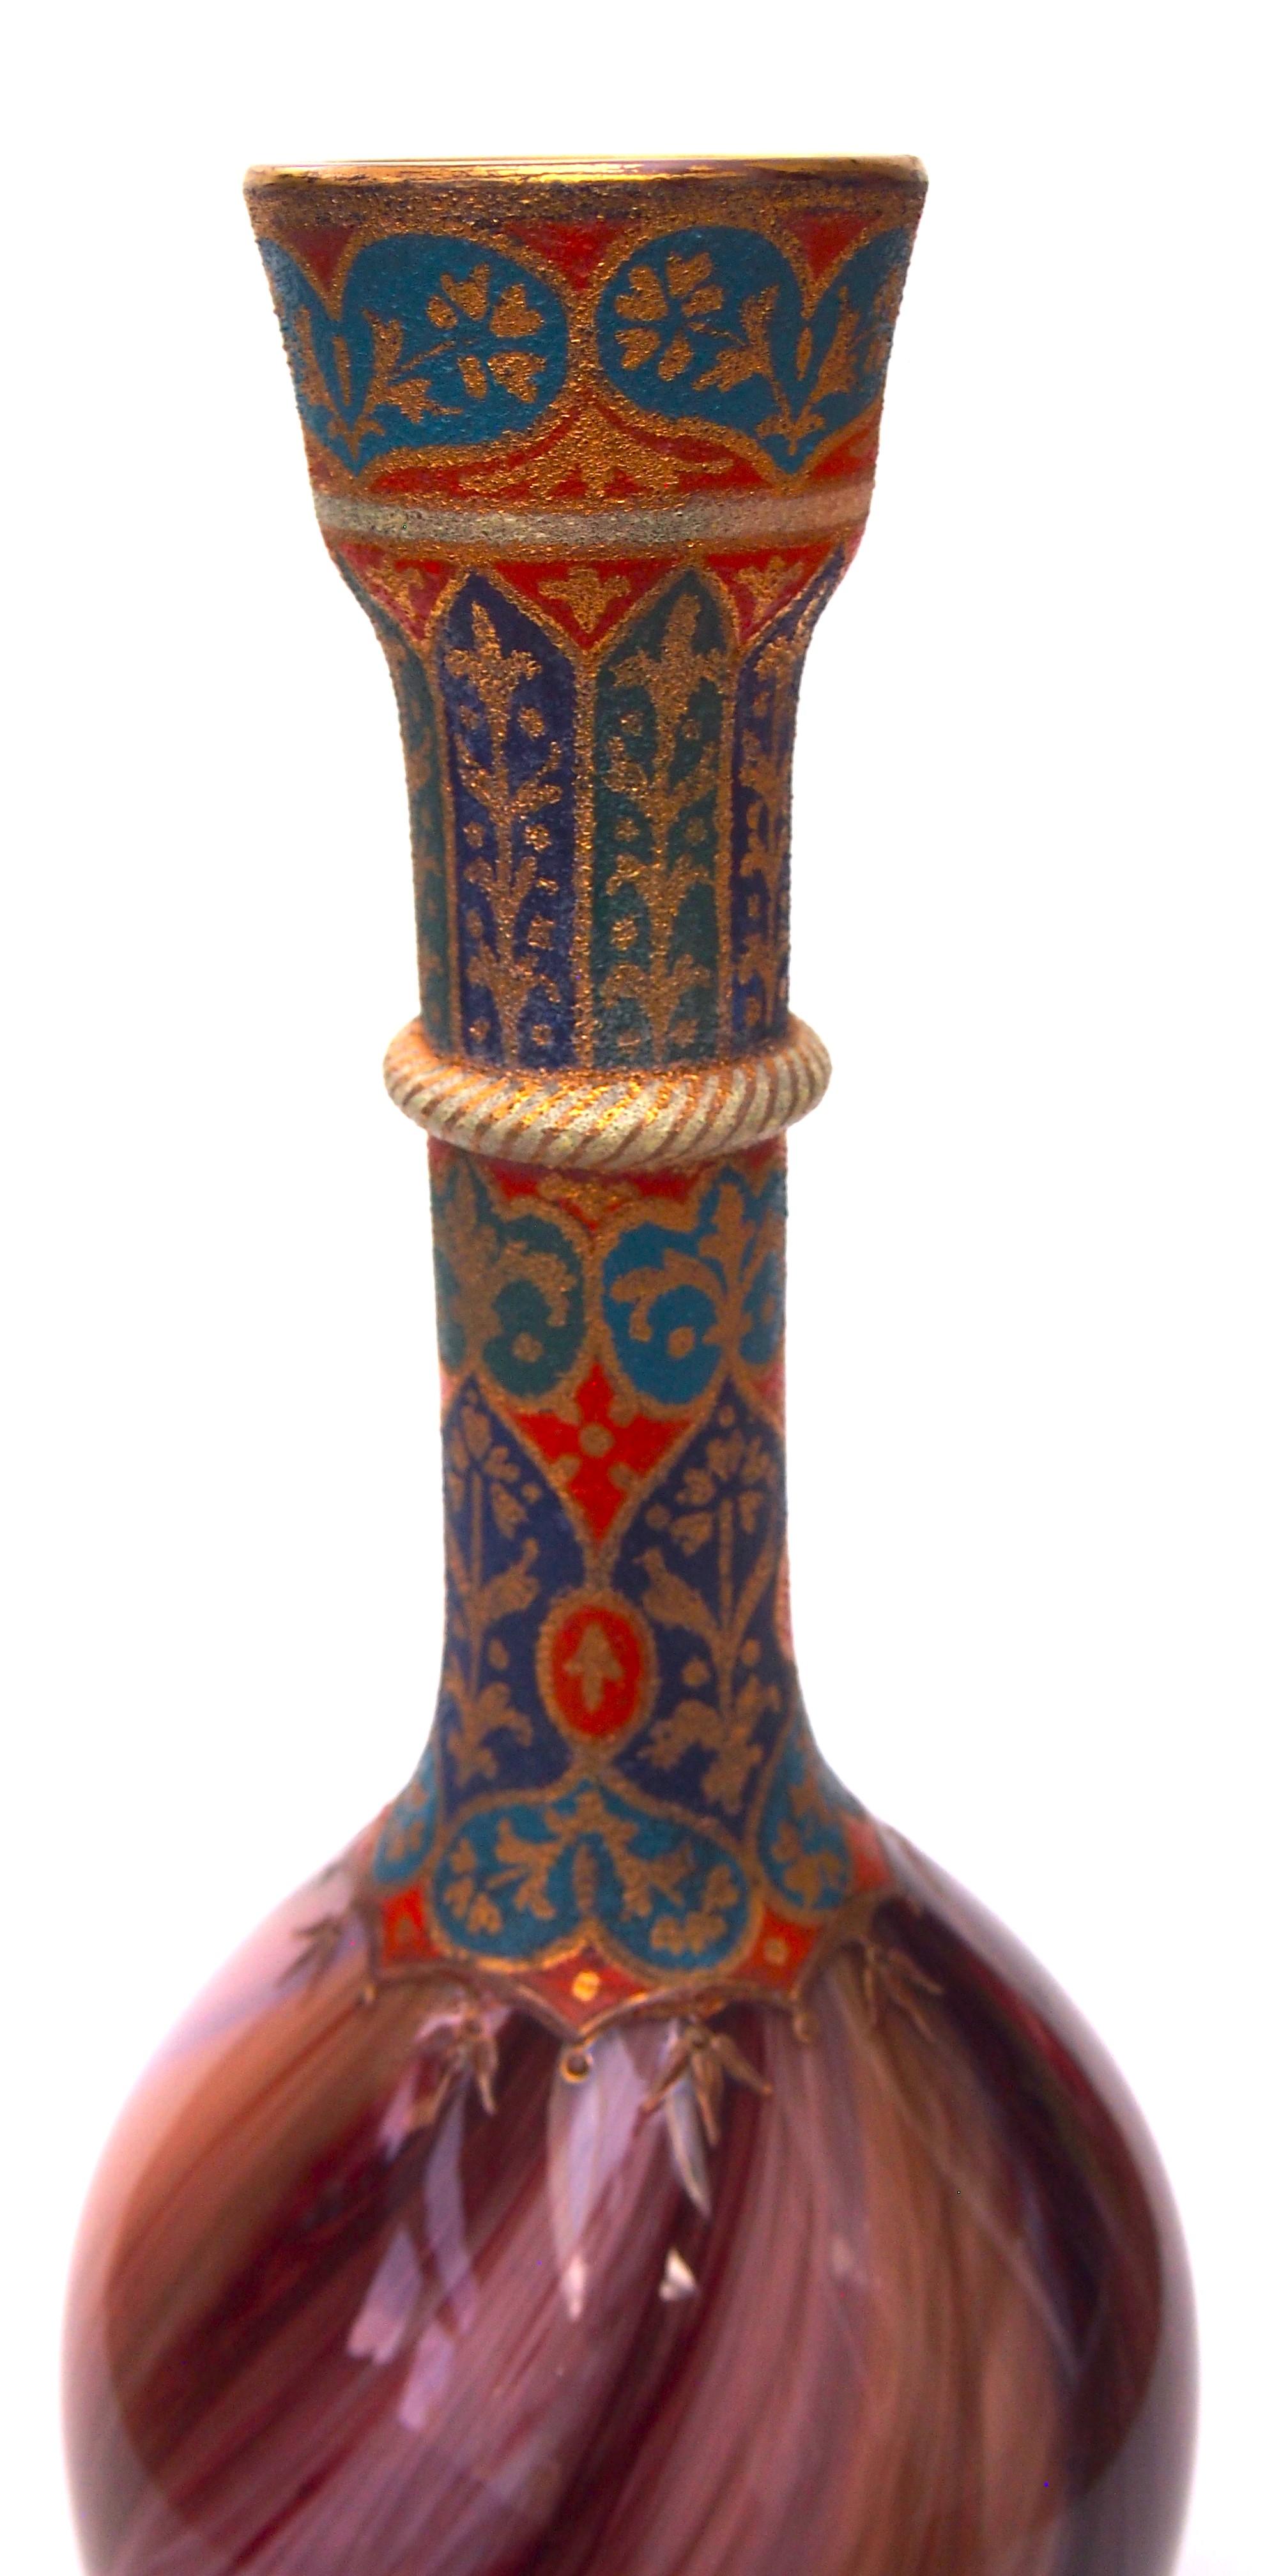 Eine dramatisch hohe frühe Loetz-Vase. Sehr frühe und imposante emaillierte Onyx-Vase von Loetz, braun und rot auf einem rosa Sockel mit blauen Streifen und klassischer islamischer Emaillierung am Kragen, die sich um den Sockel herum wiederholt.